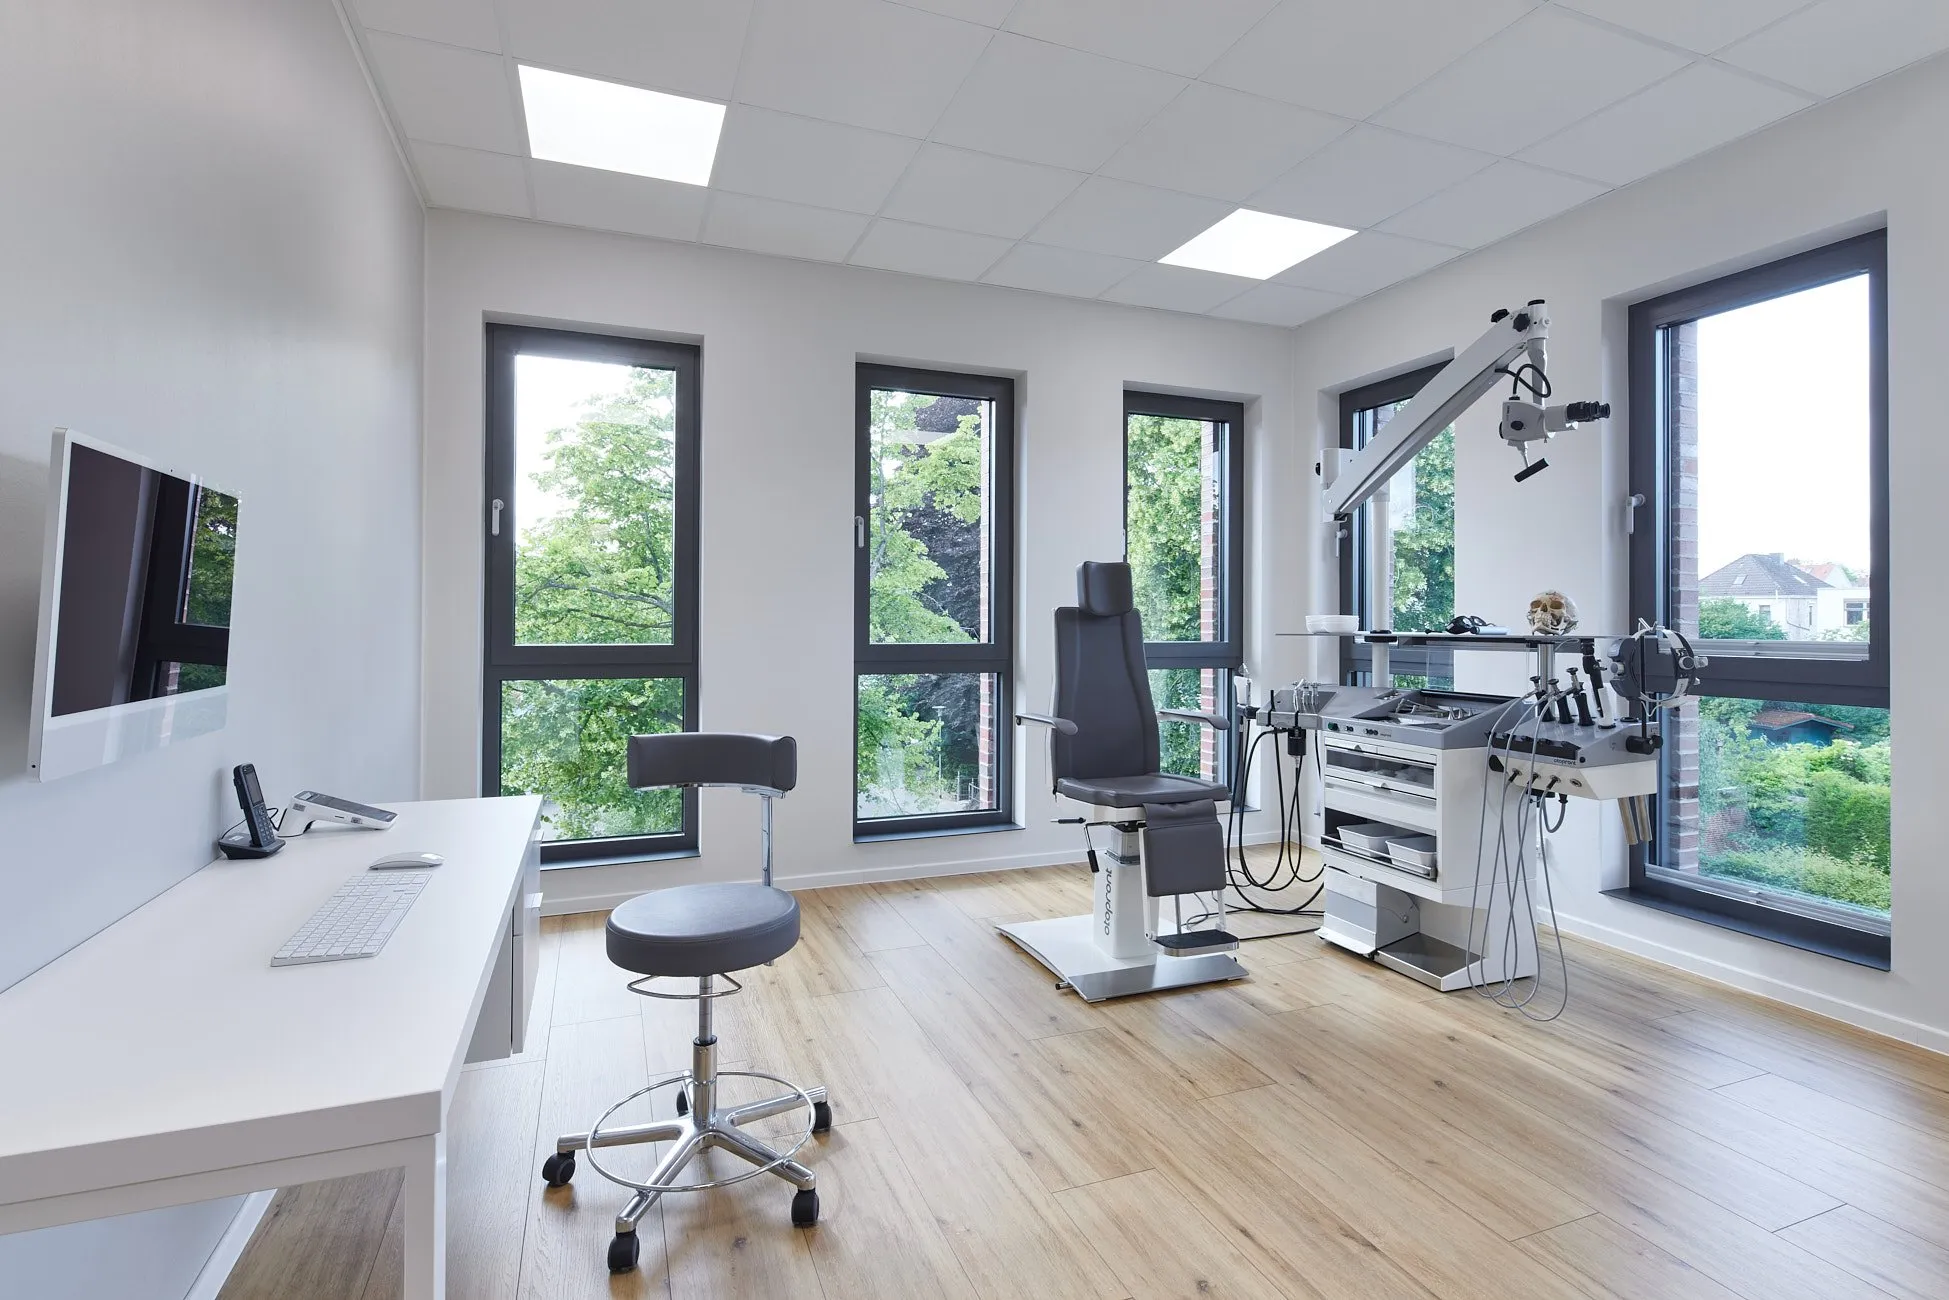 Behandlungszimmer mit Zahnarztstuhl und moderner Einrichtung auf Bodenbelag in Holzoptik